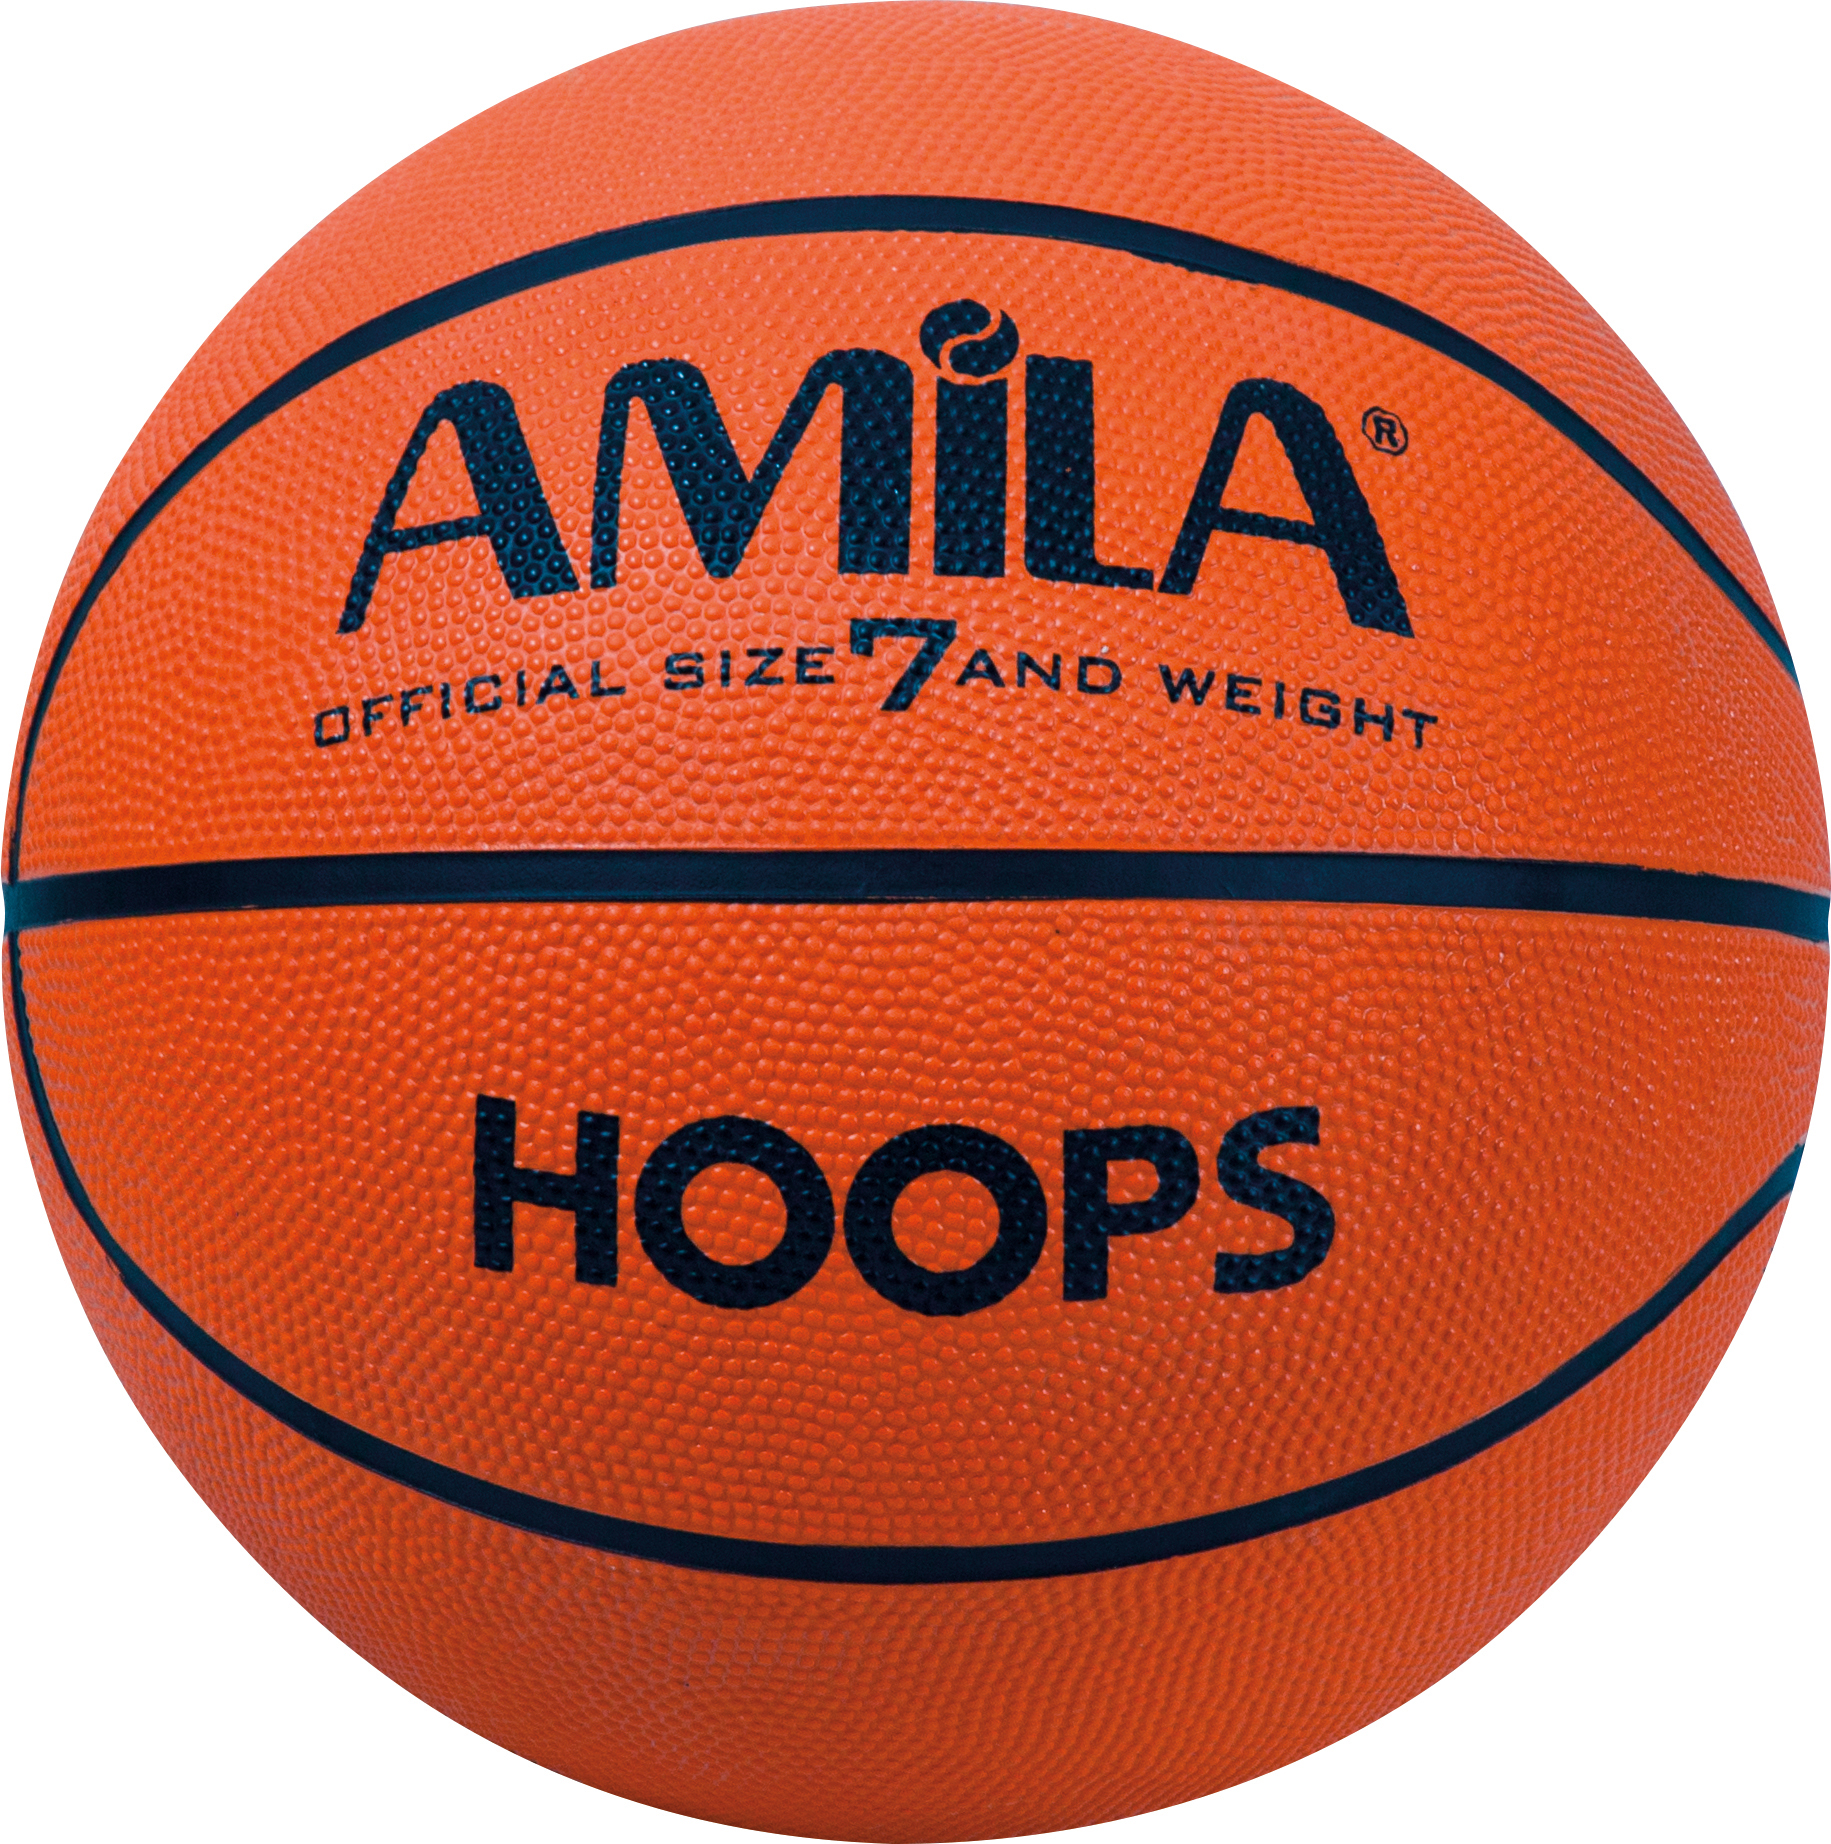 Μπάλα Basket AMILA Hoops No. 7